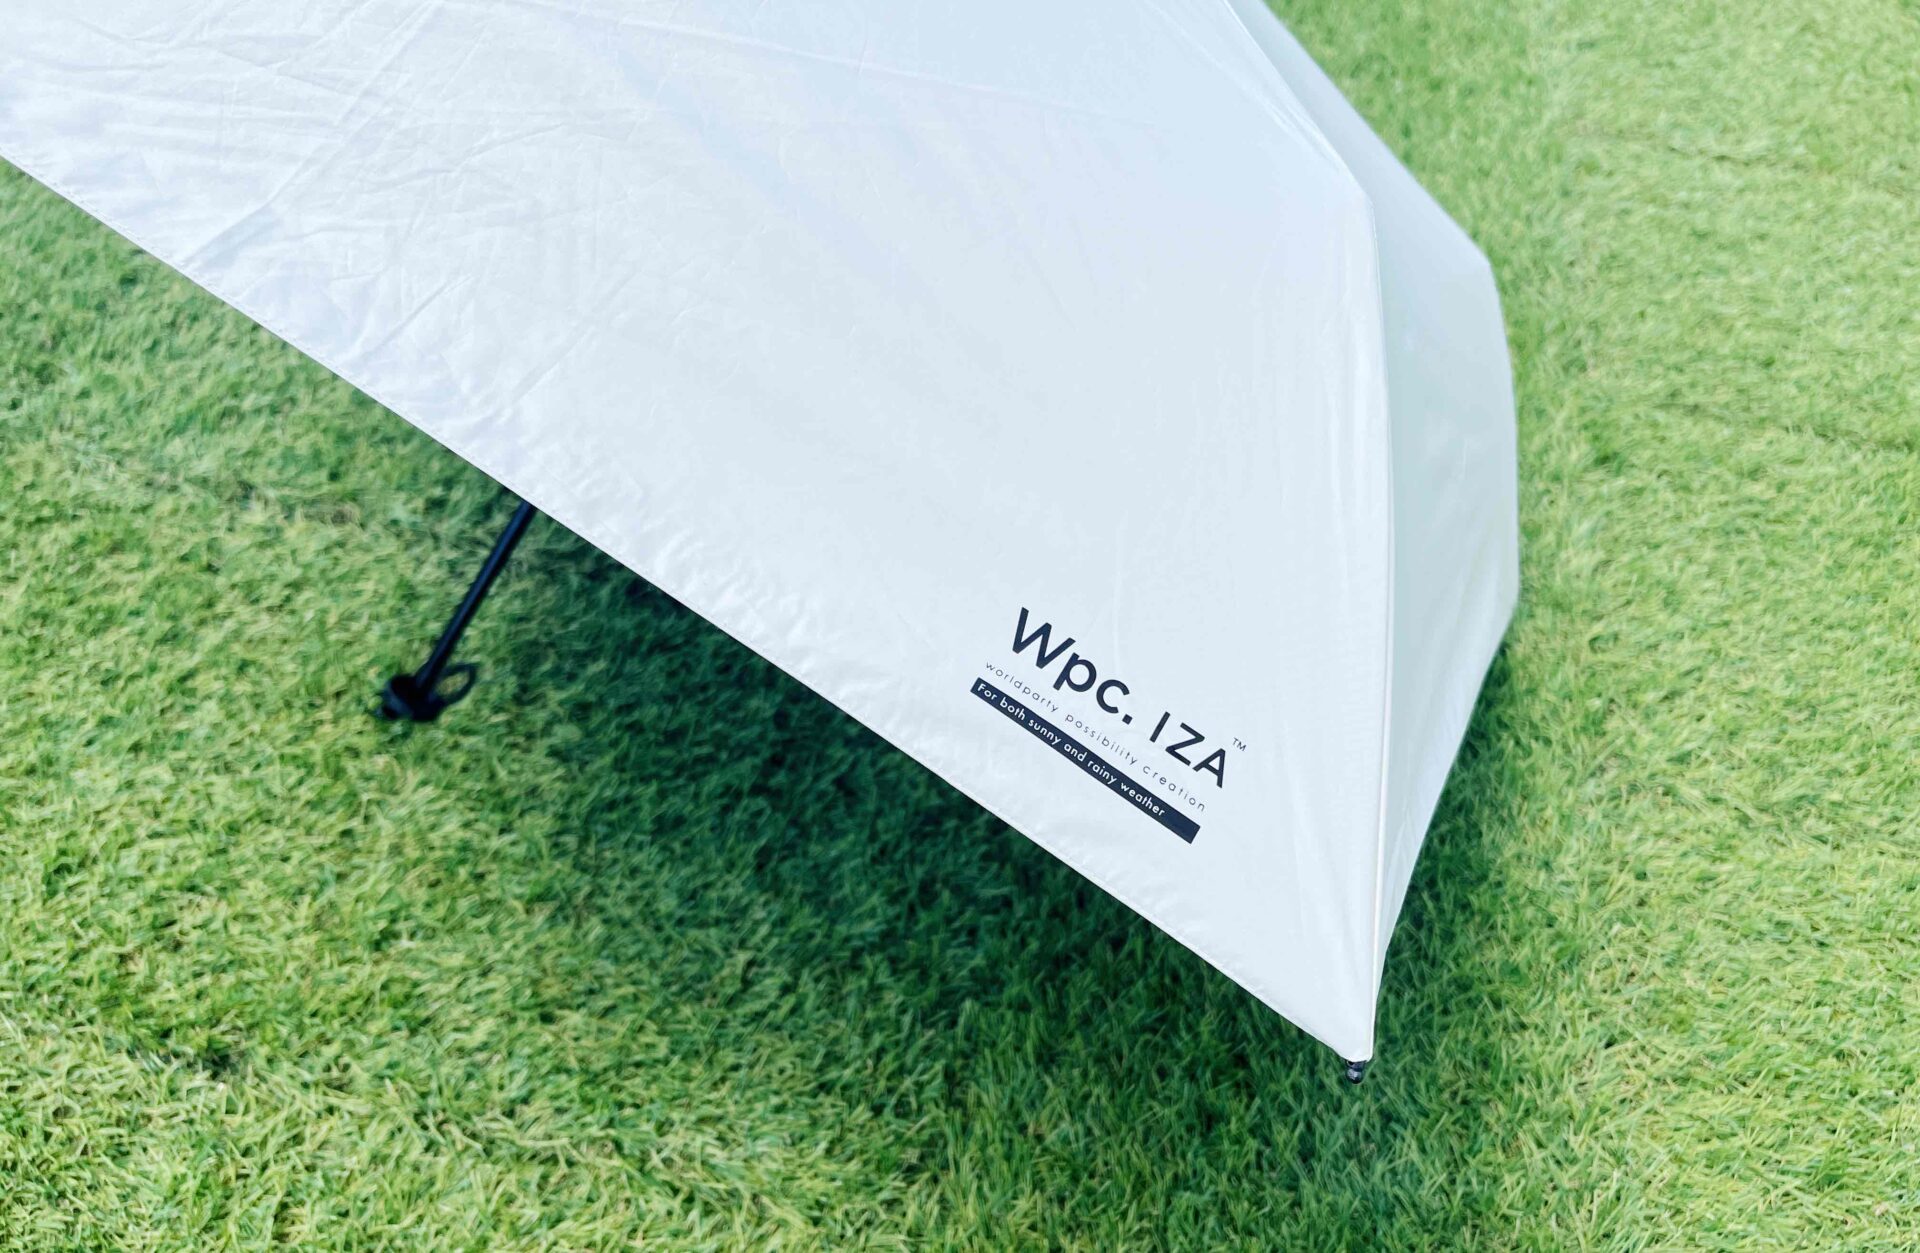 日傘についた「wpcイーザ」のロゴマークのアップ写真